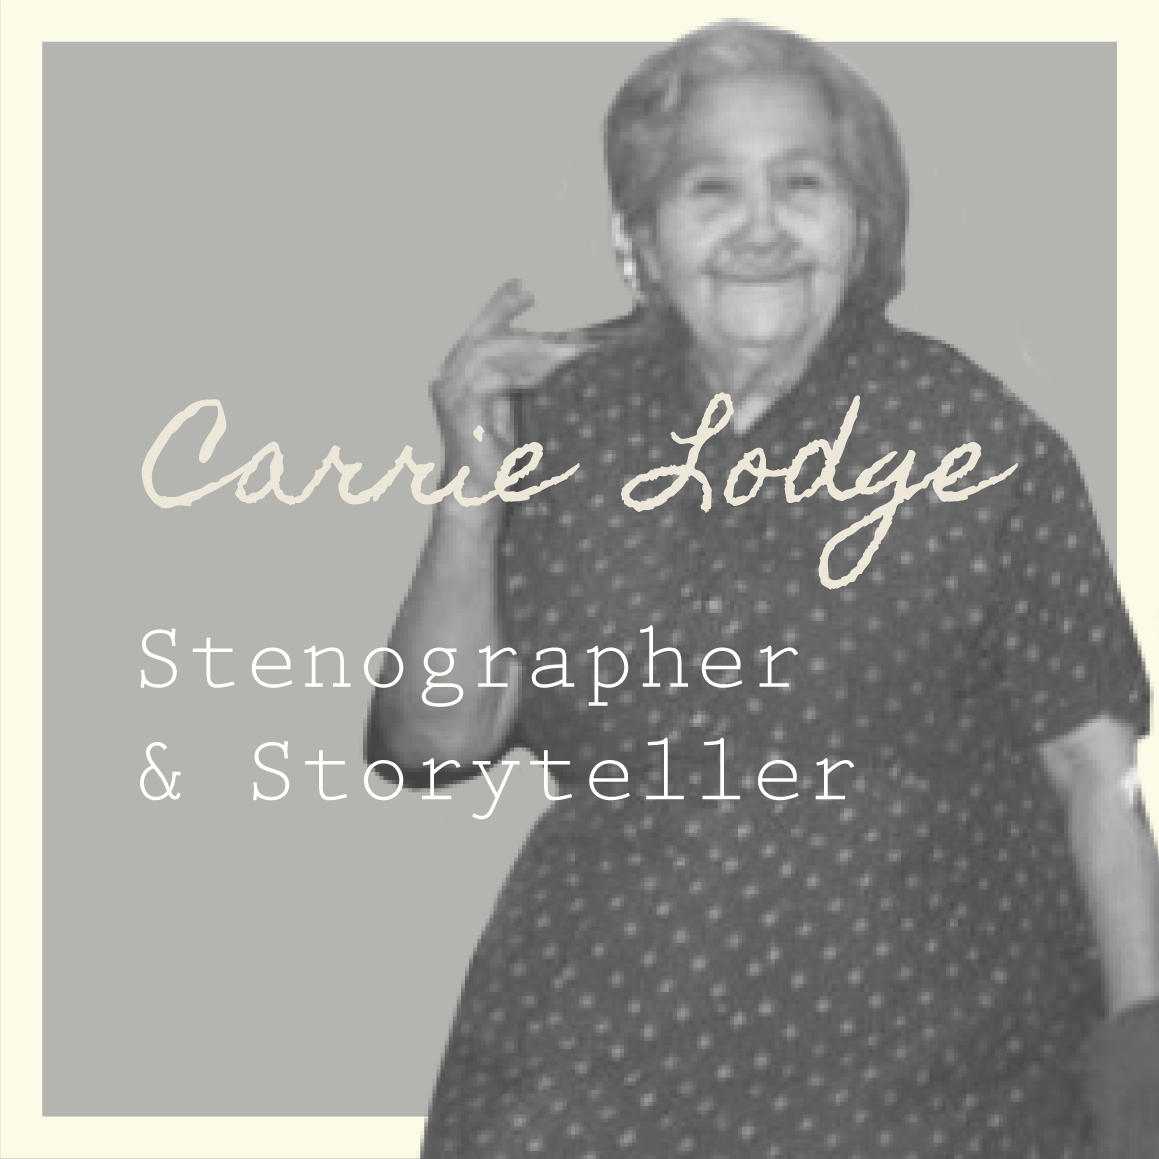 Carrie Lodge: Stenographer & Storyteller